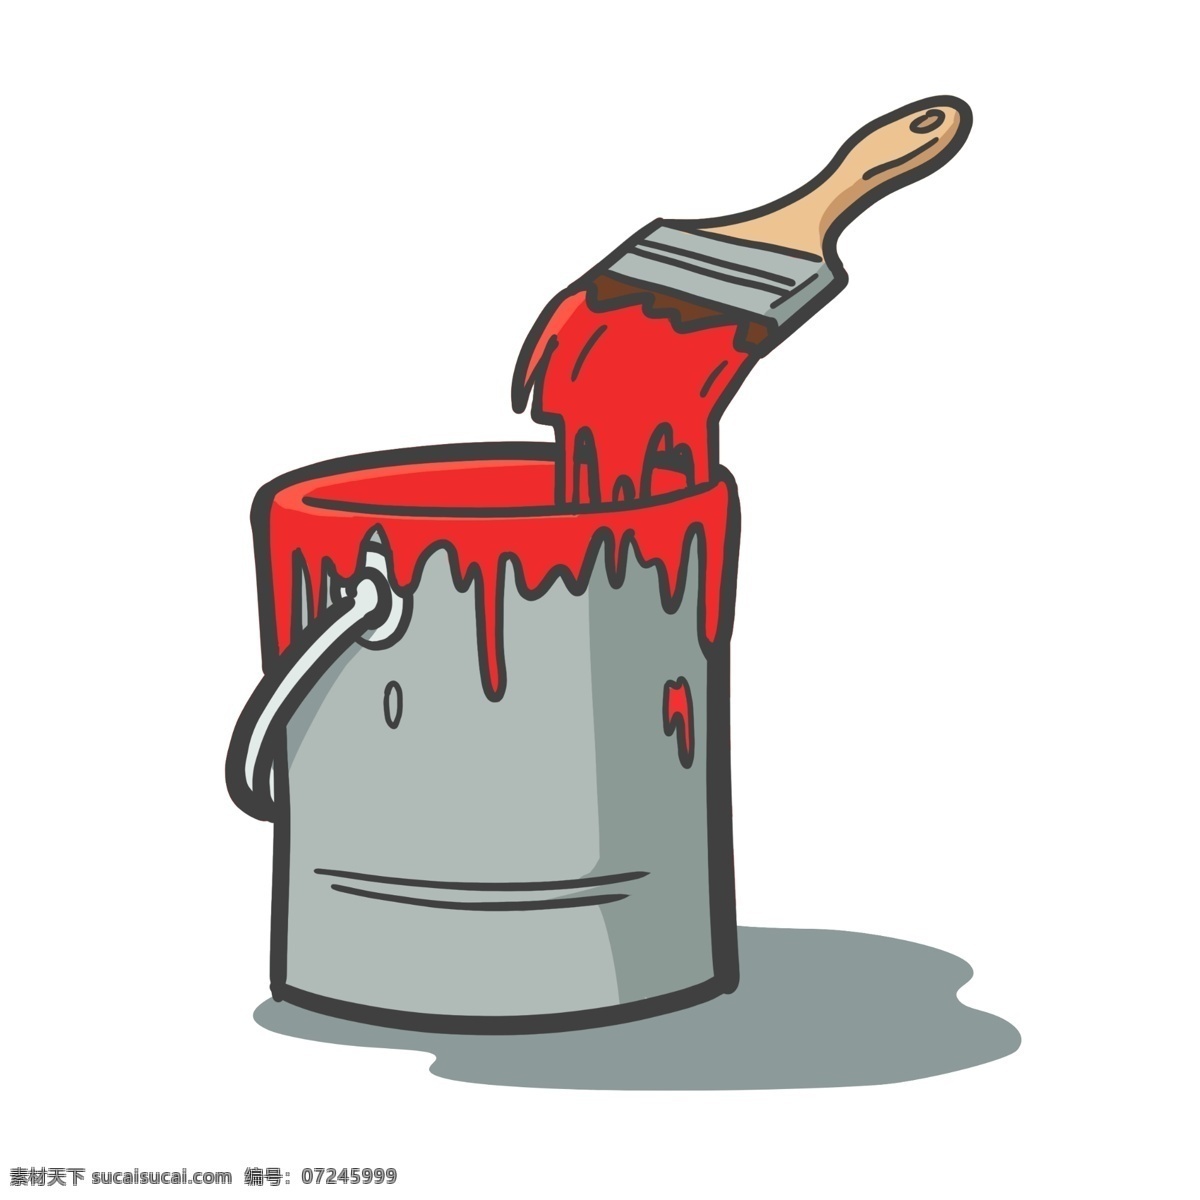 免 扣 卡通 红色 油漆 油漆桶 油漆刷 油漆画册 油漆广告 油漆桶包装 油漆名片 油漆设计 刷子 彩色油漆 彩色油漆刷